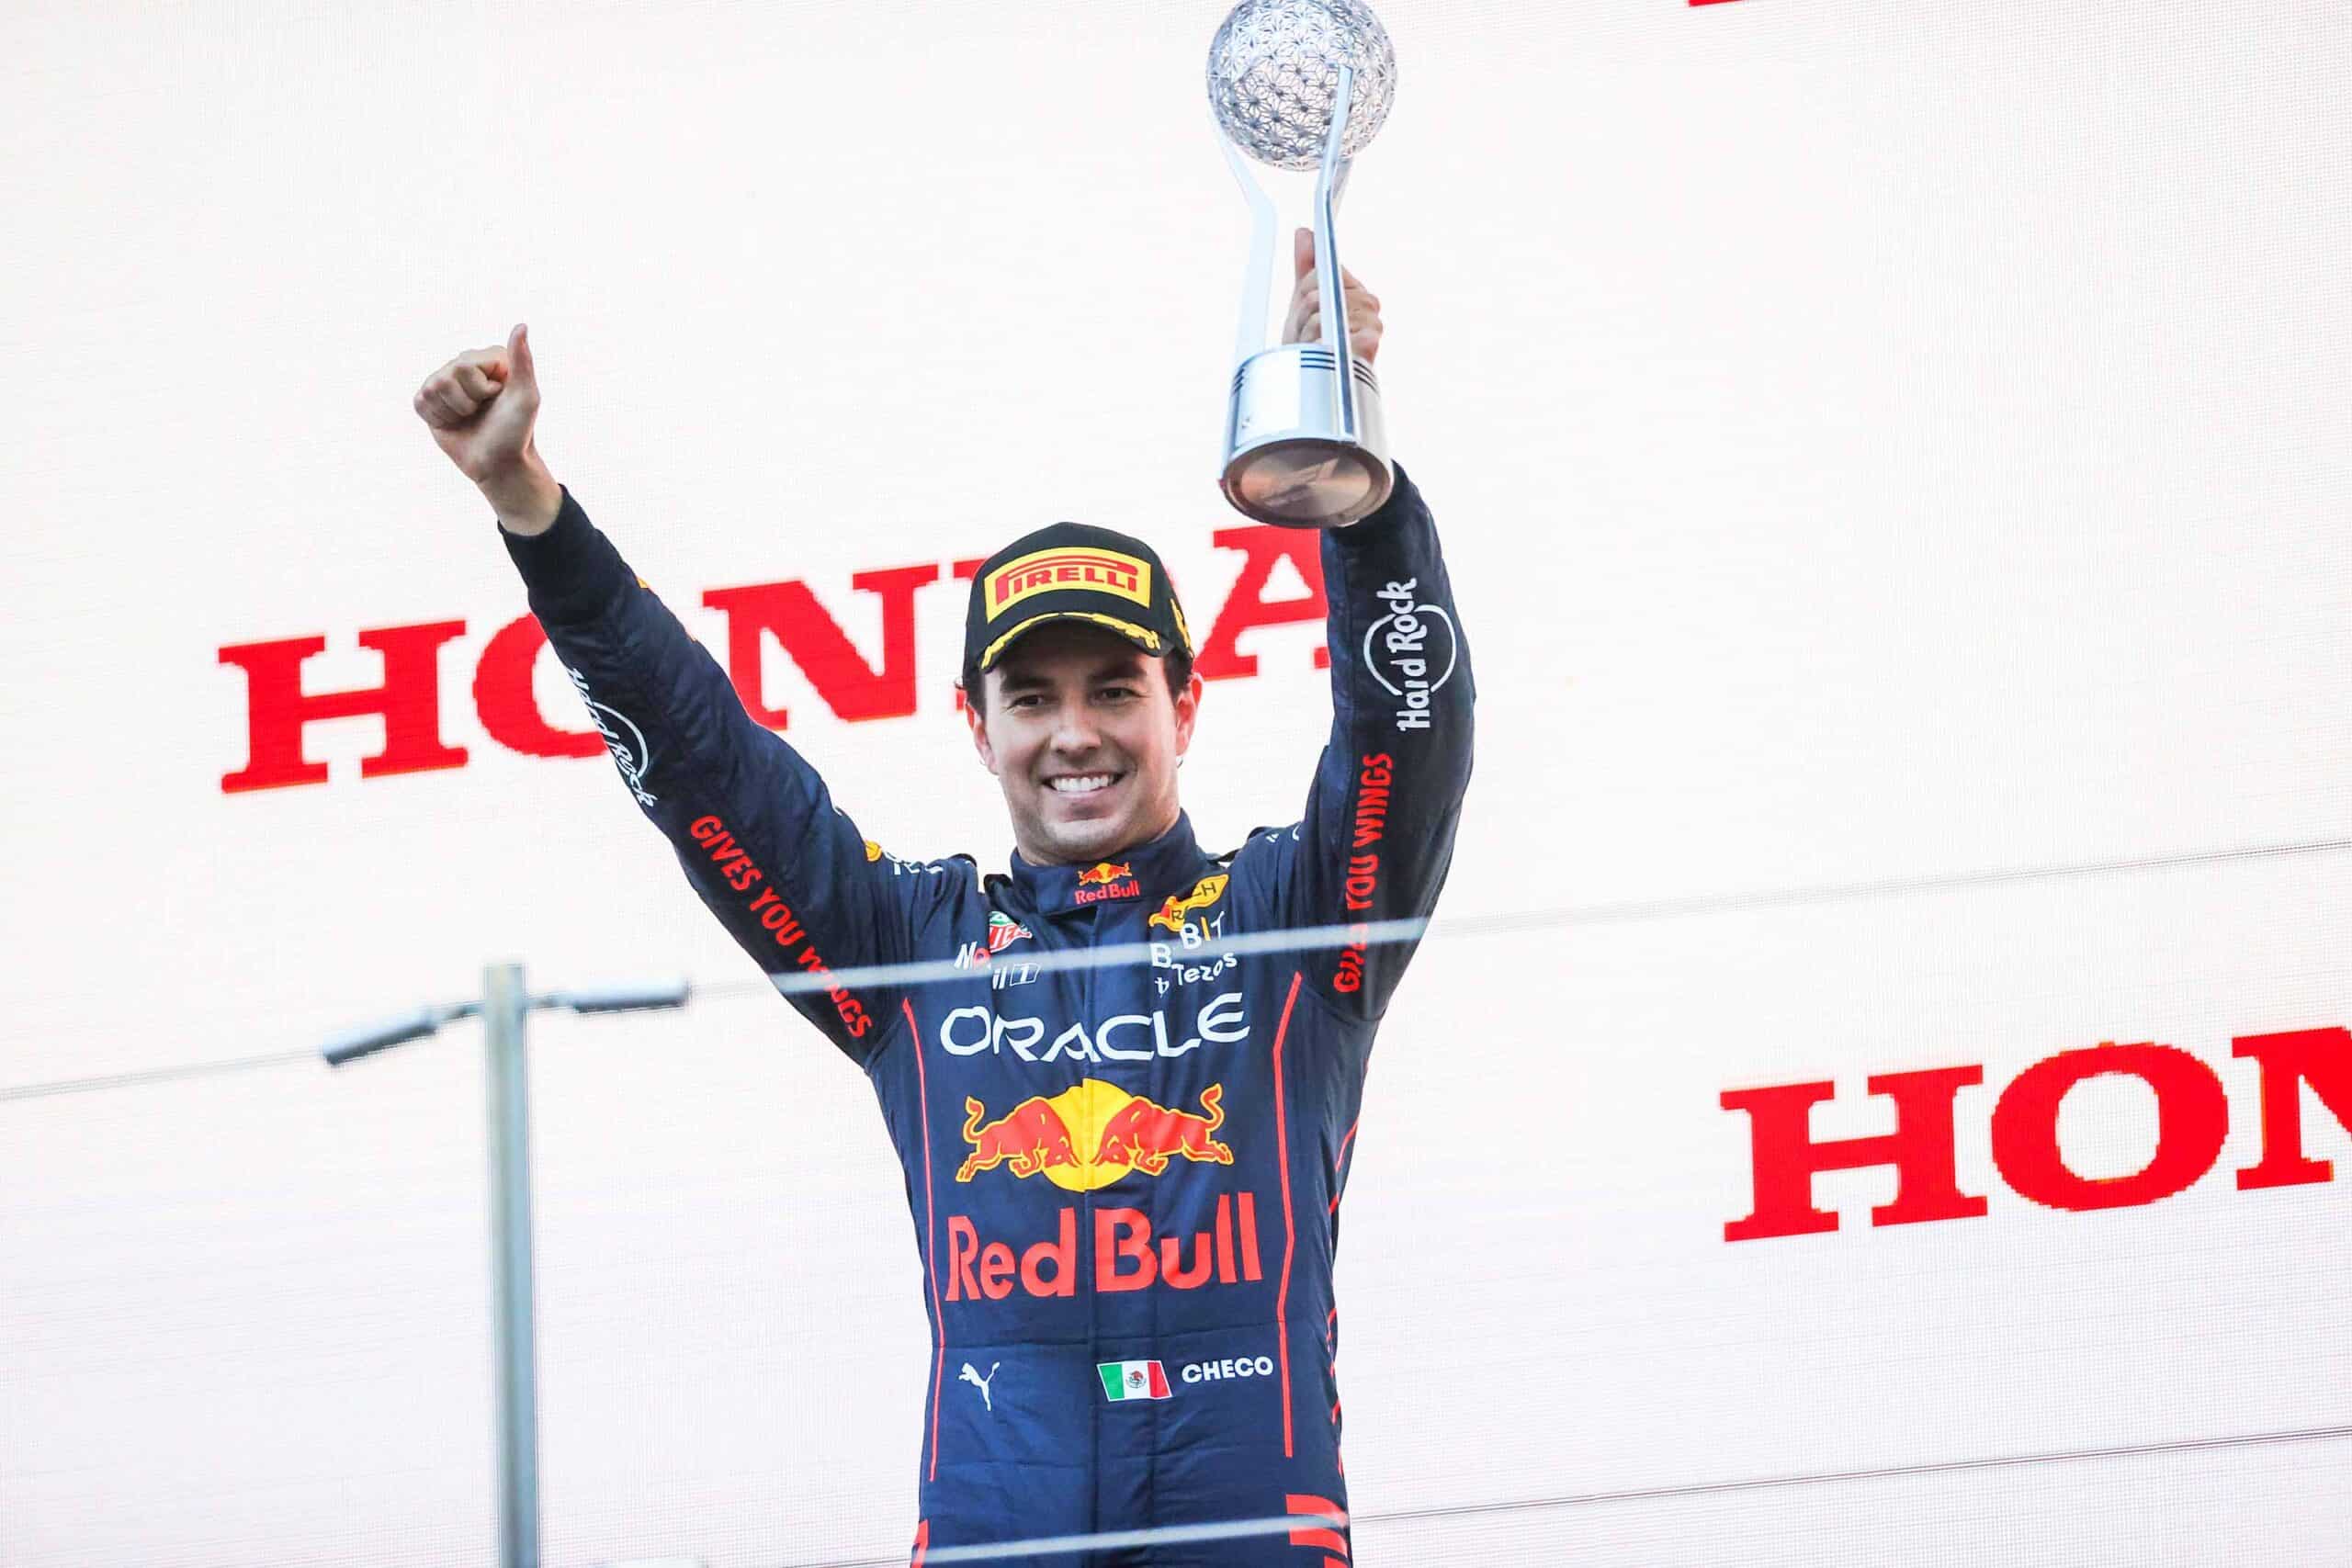 El piloto mexicano de Red Bull, Sergio "Checo" Pérez, finalizó segundo en el Gran Premio de Japón. Foto: Especial